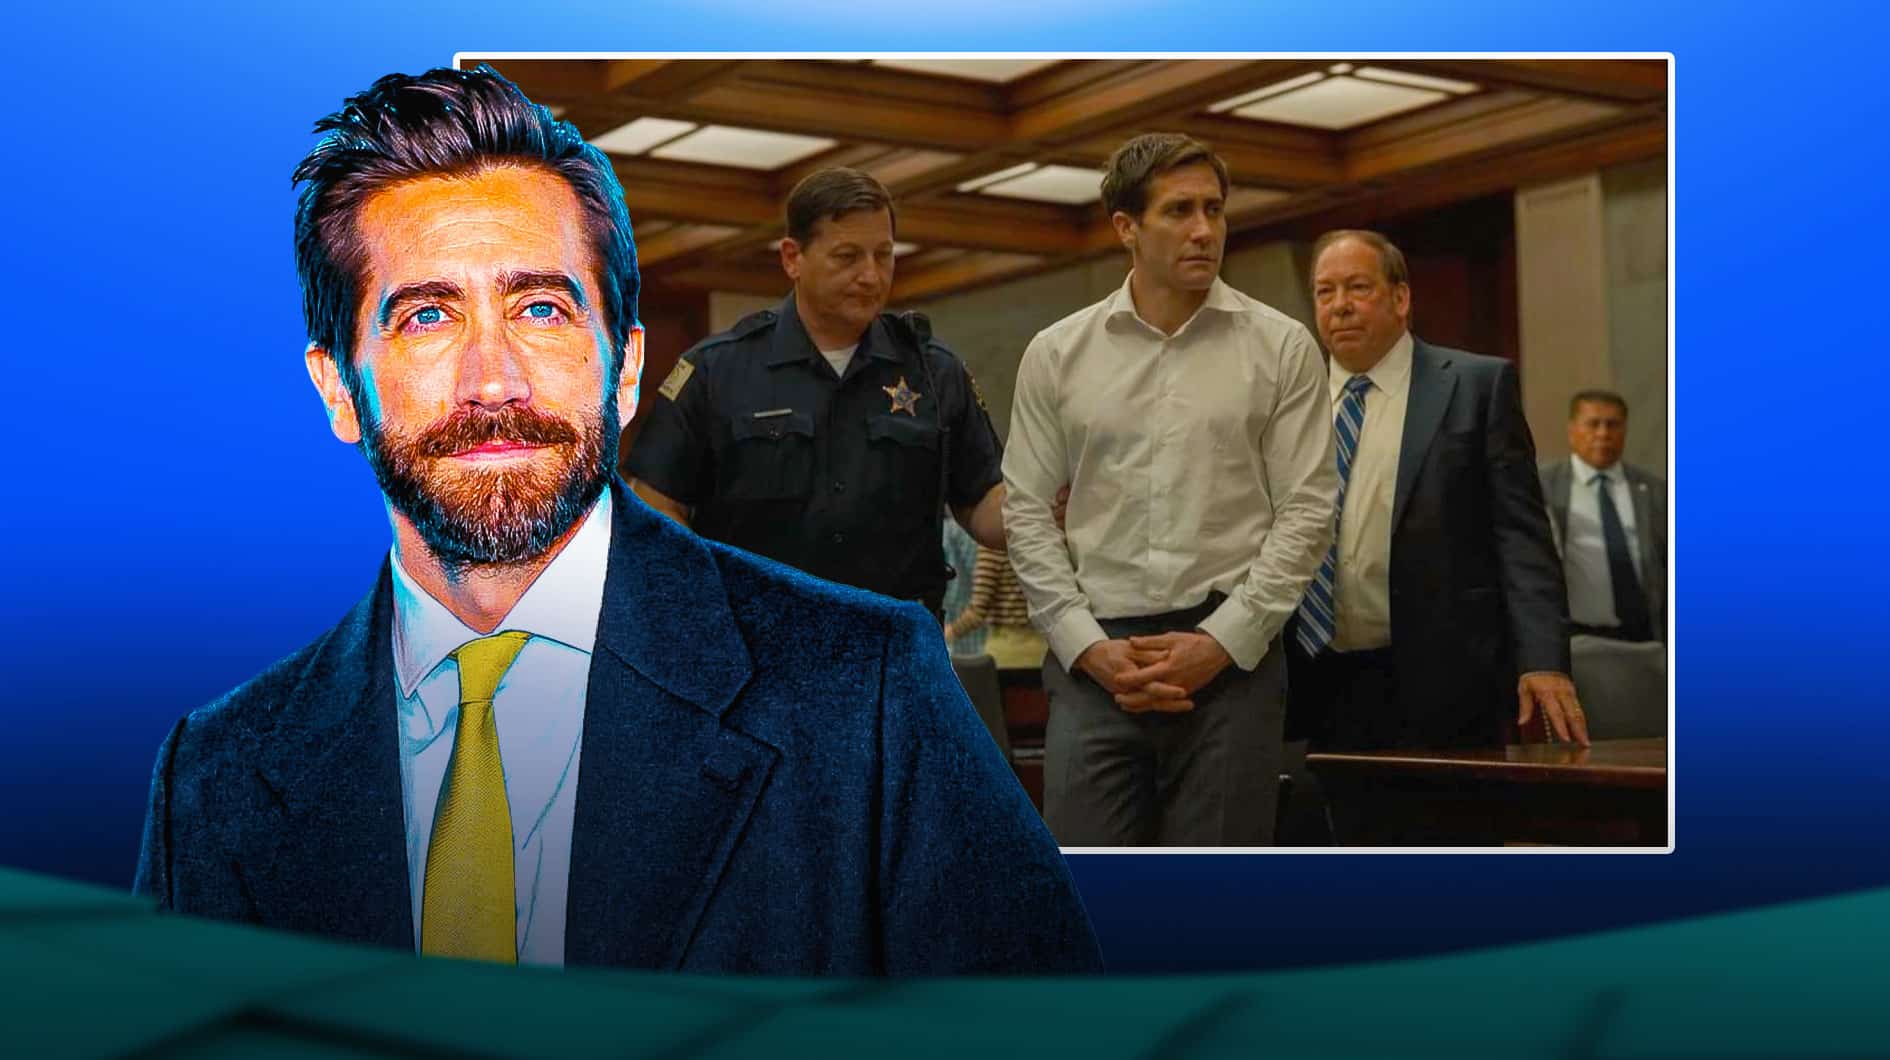 Jake Gyllenhaal stars in Apple TV+ series Presumed Innocent